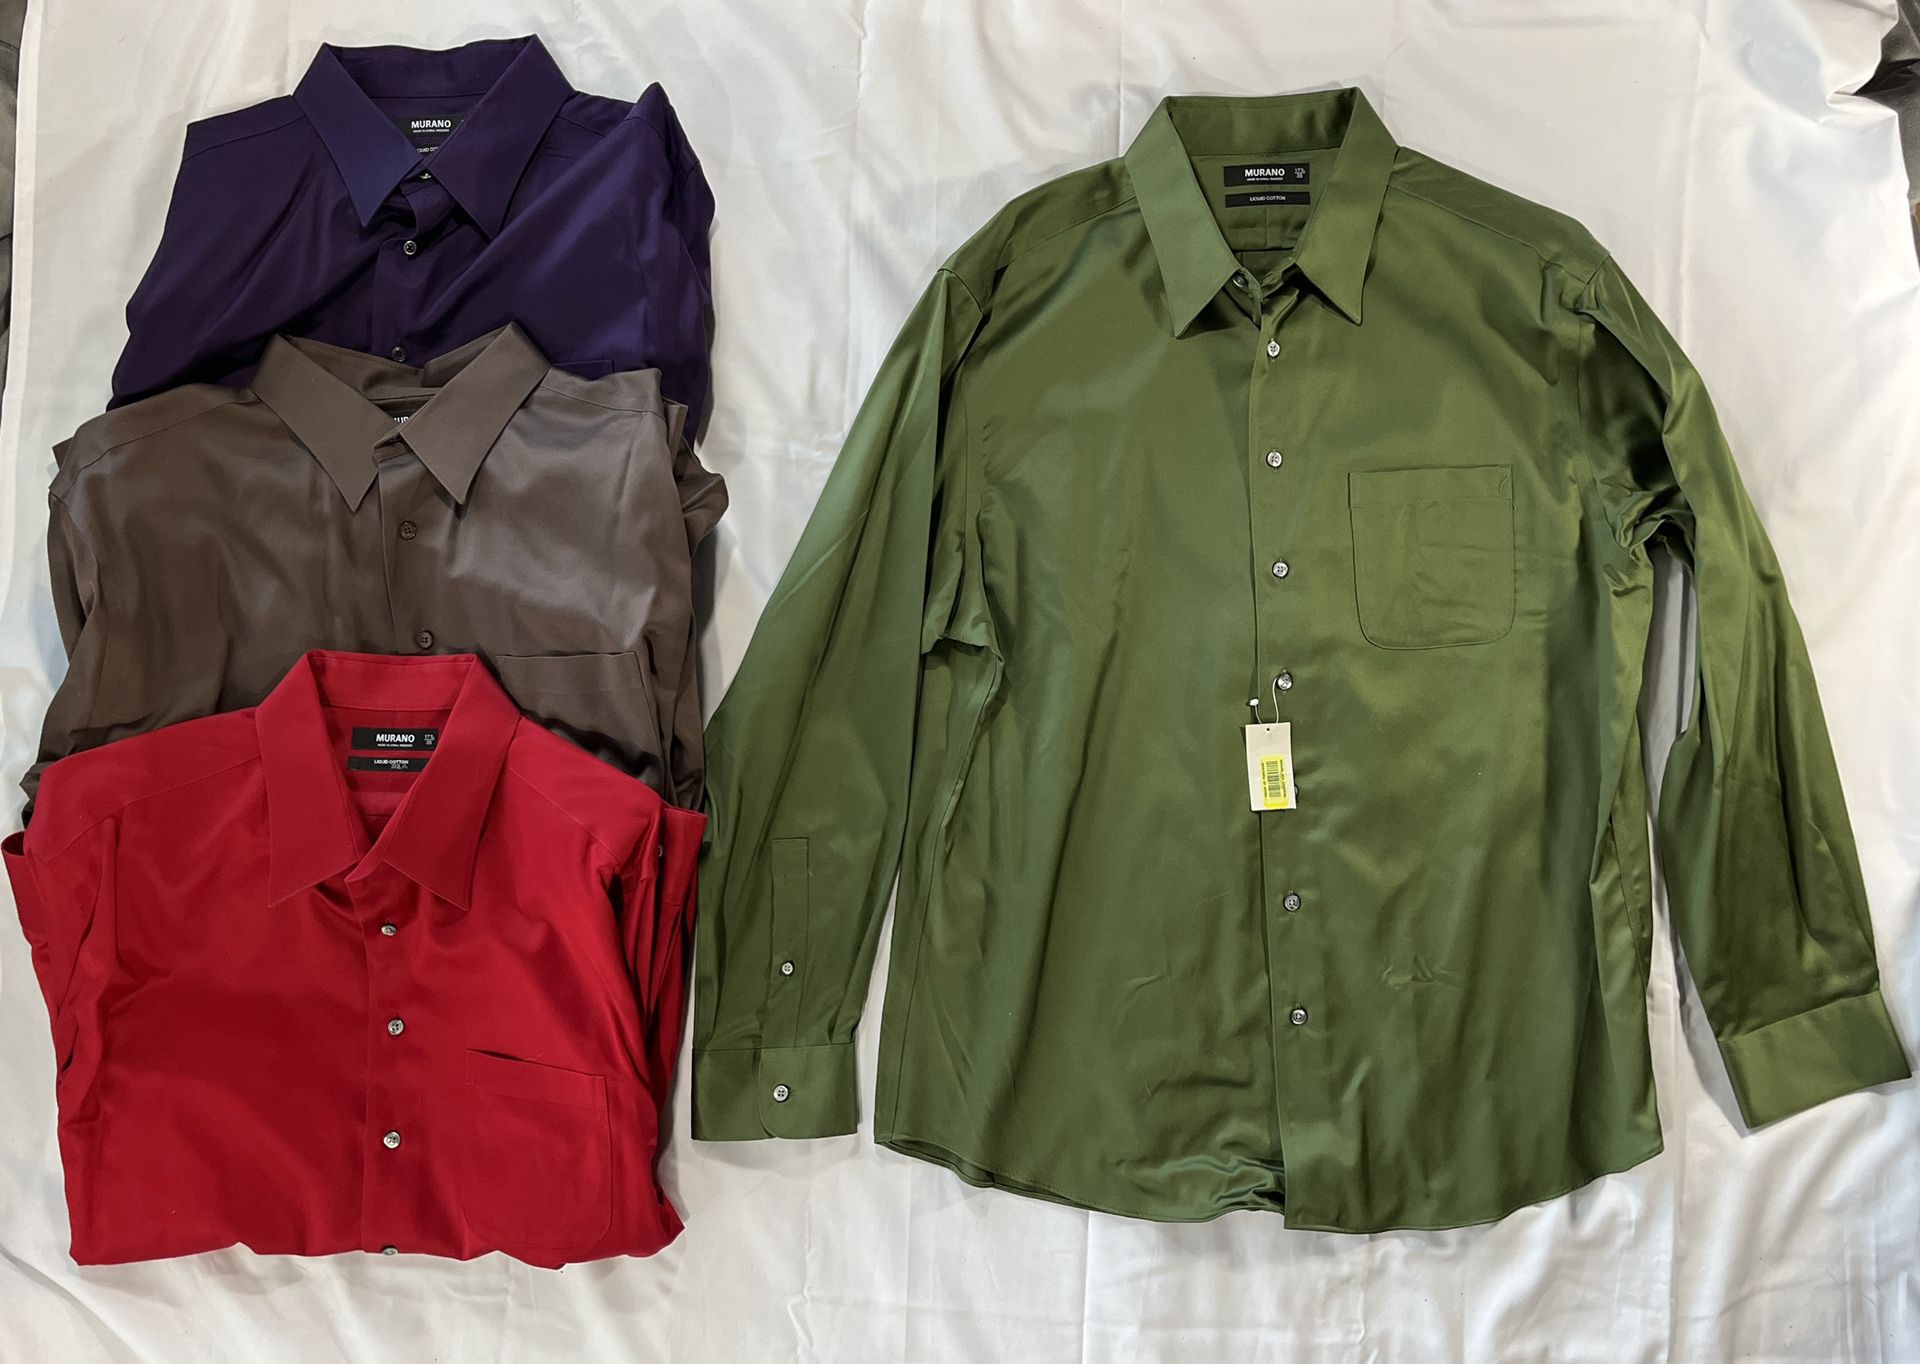 Murano Liquid Cotton Men’s XL Long Sleeve Button Up Dress Shirts Lot Of 4